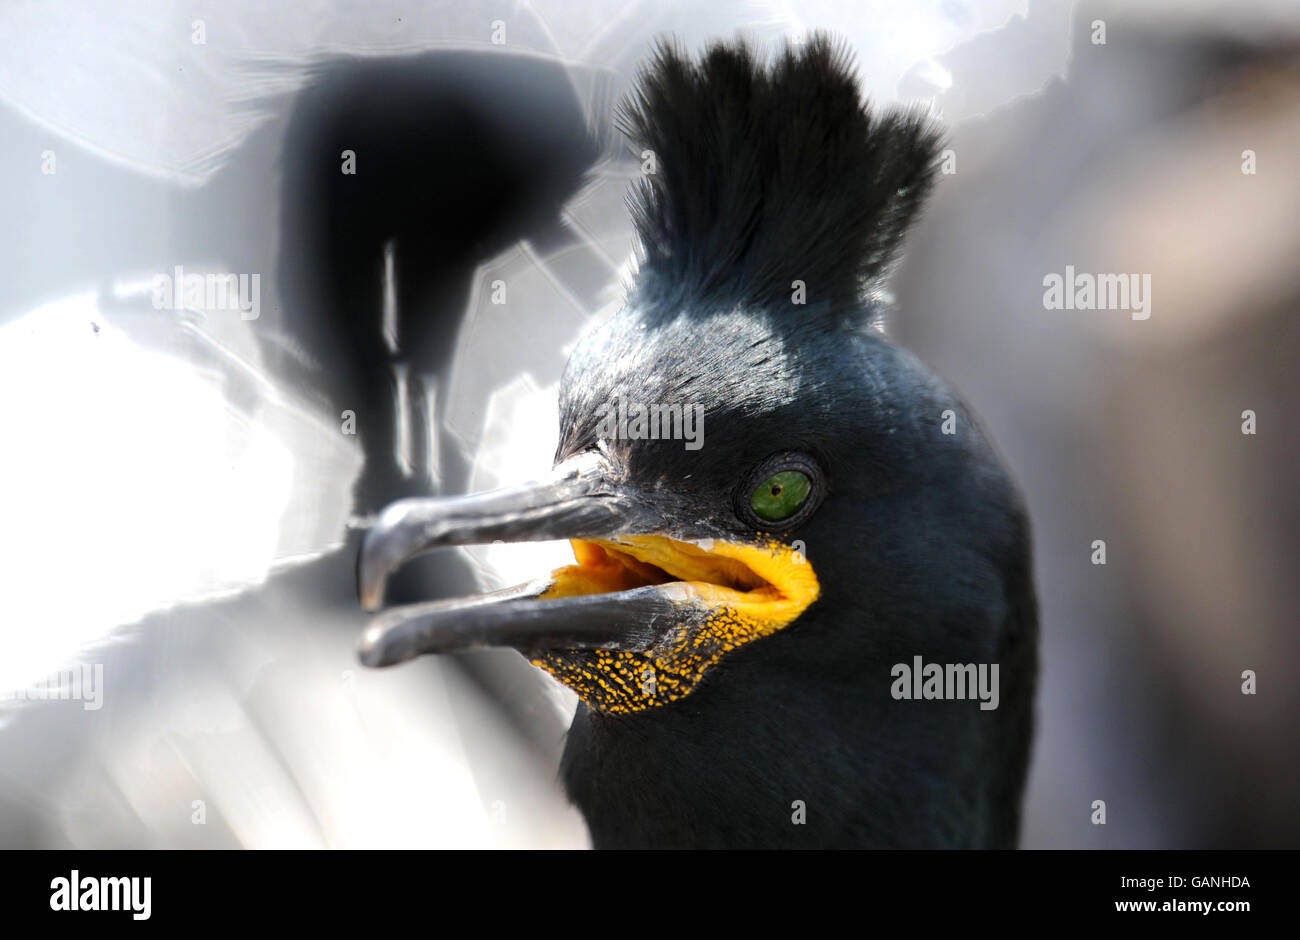 Stock delle Isole Farne. Un uccello di Shag nidificante sulle Isole Farne al largo della costa del Northumberland. Foto Stock